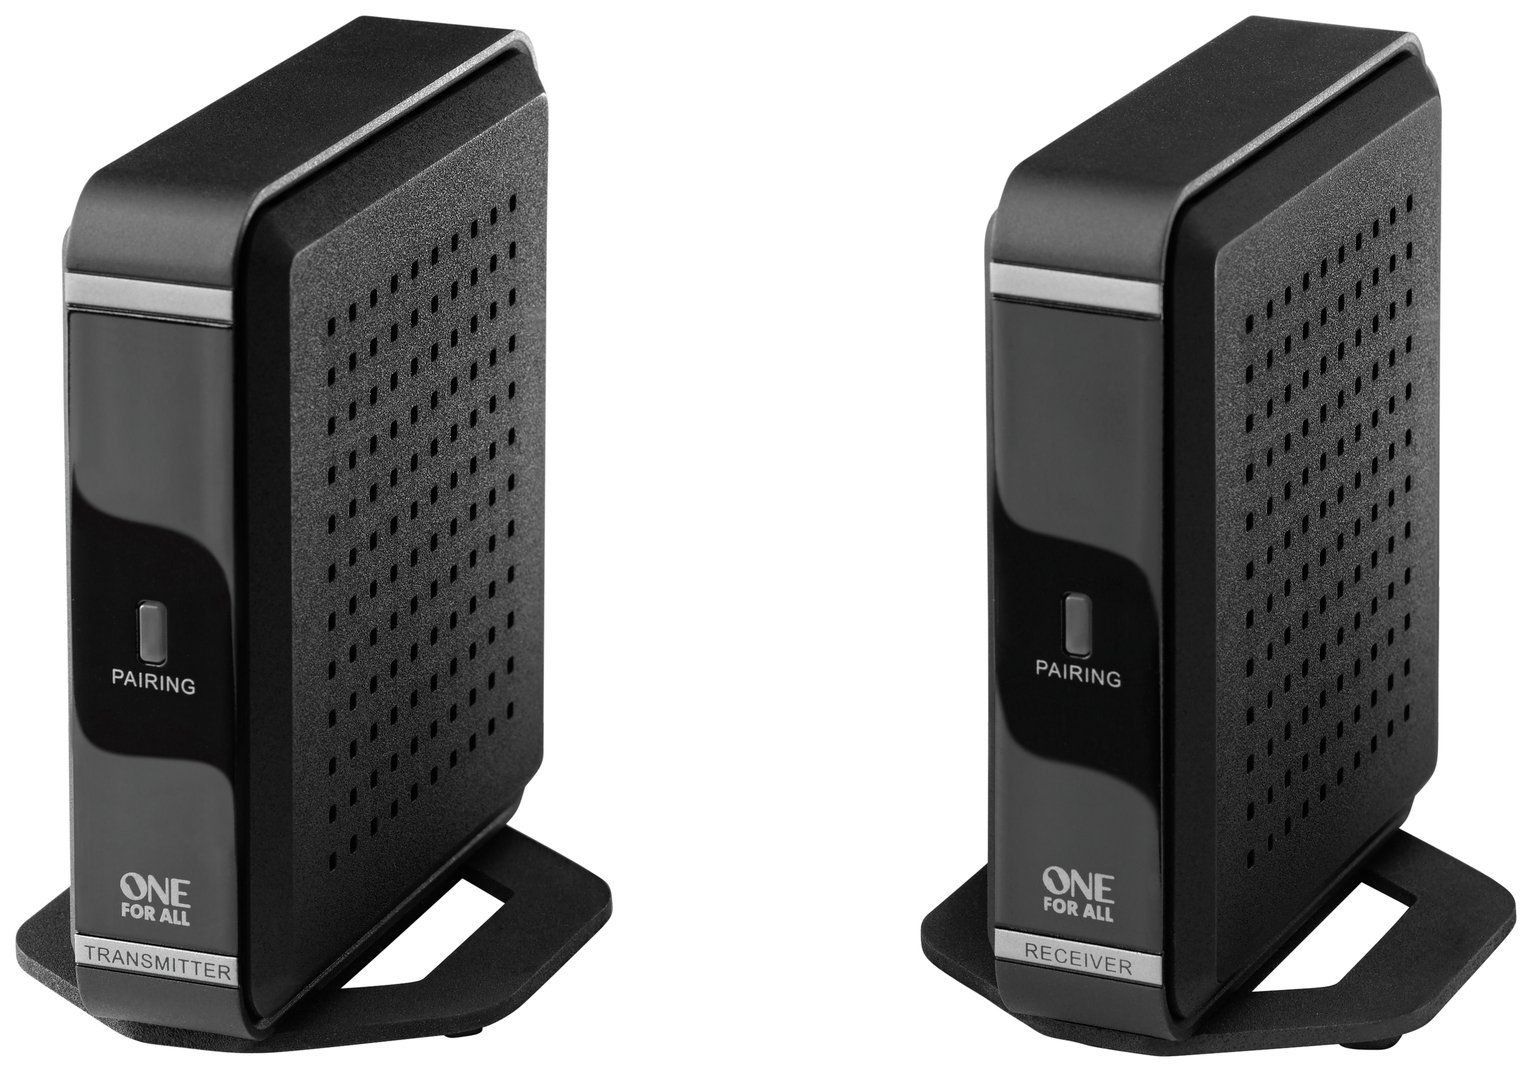 One For All SV1760 Wireless HDMI AV Sender Review